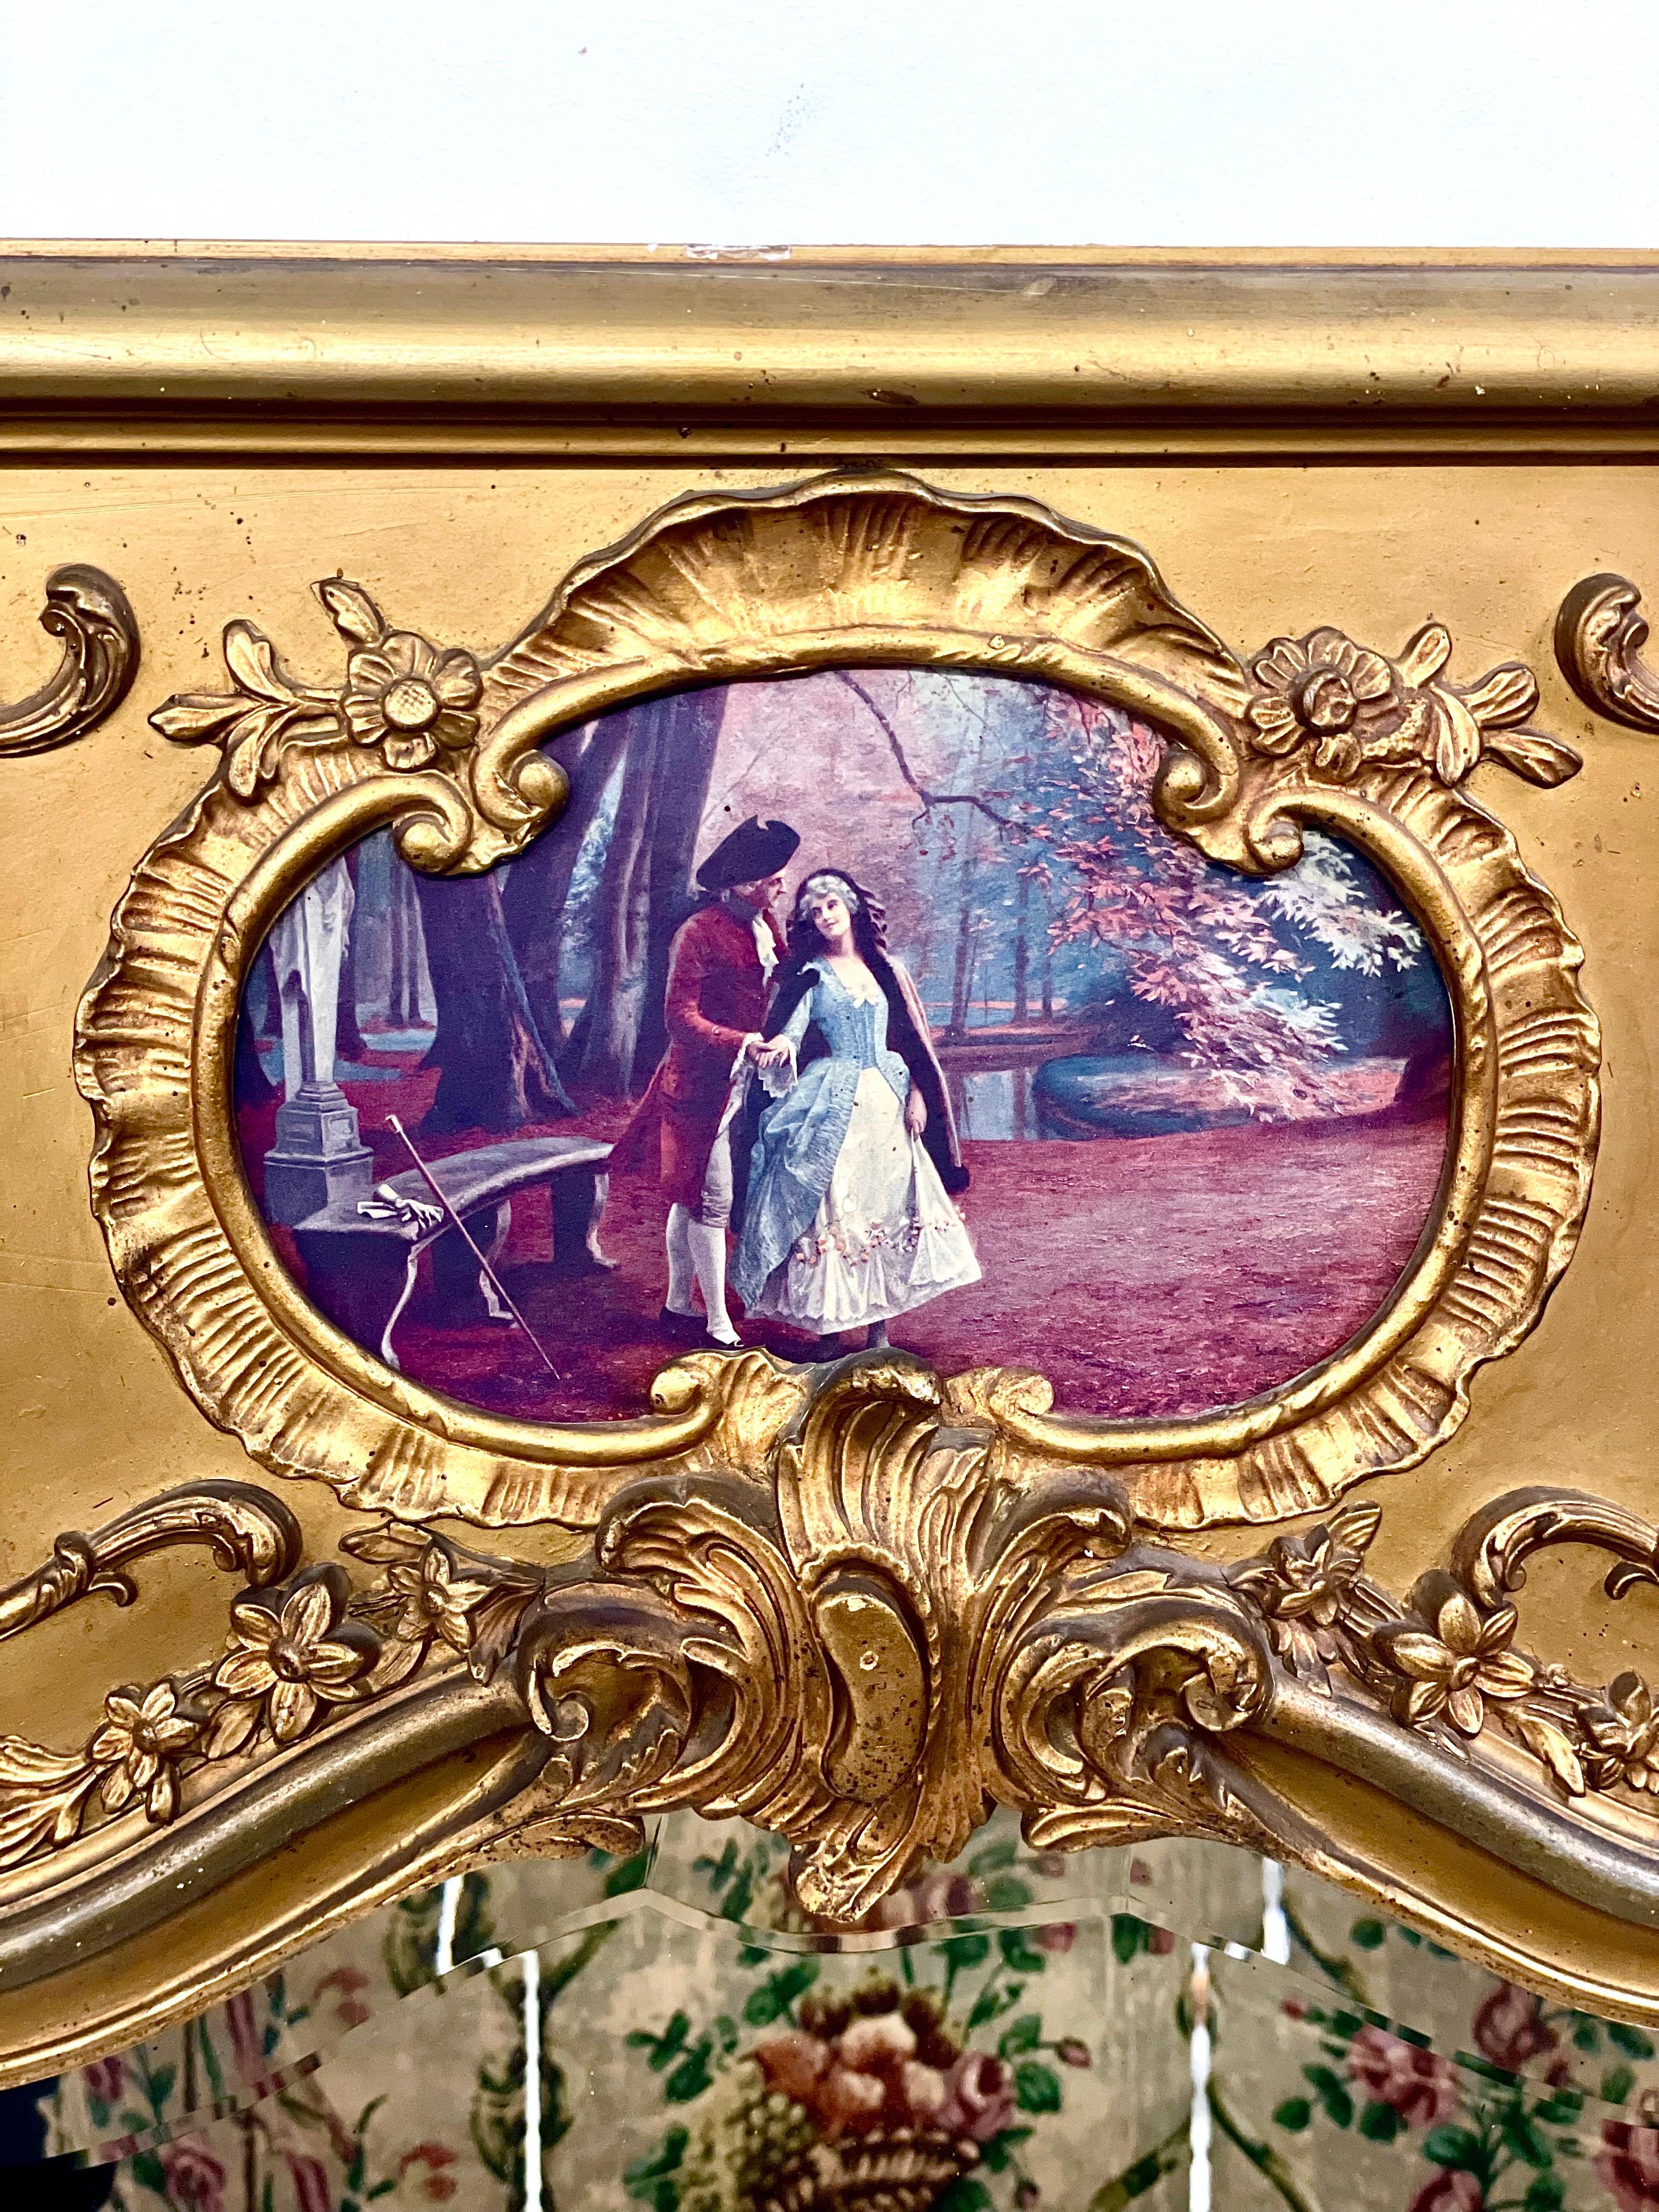 Impressionnant et très joli miroir trumeau de style Louis XV, fabriqué en bois doré et en stuc dans le style rococo, et présentant dans sa partie supérieure une reproduction d'une scène romantique avec deux amoureux dans un décor boisé stylisé. Le